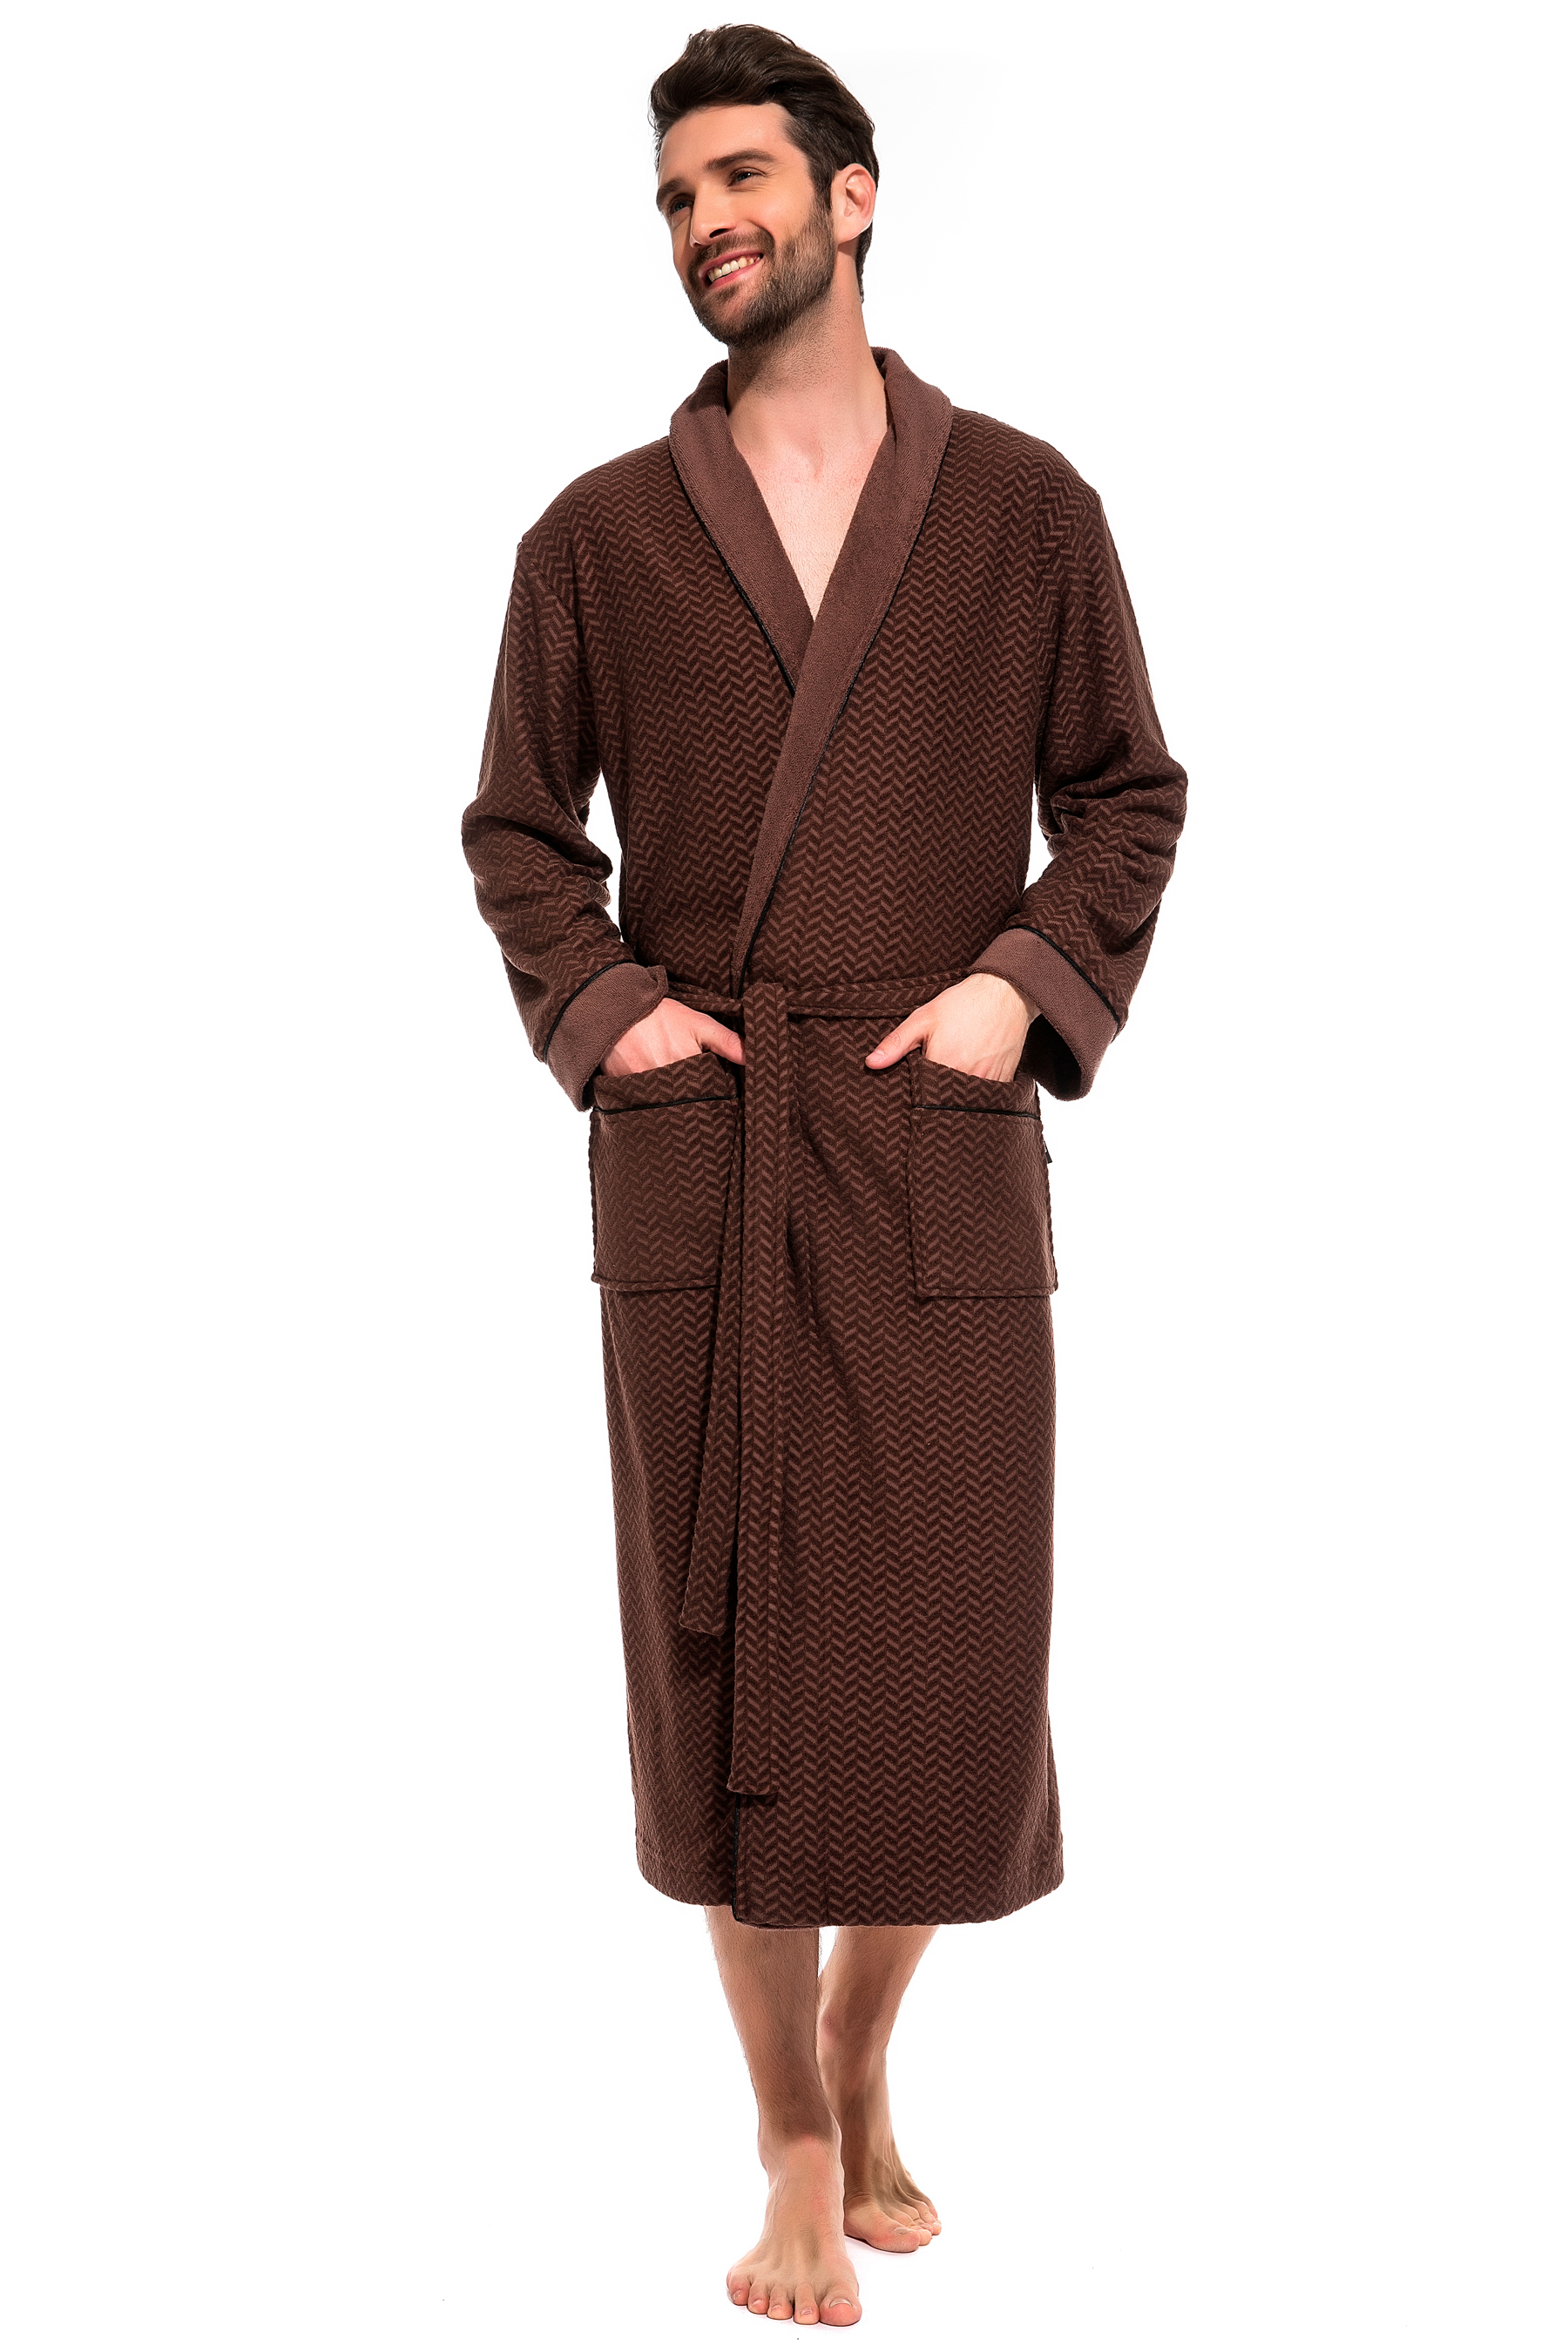 Мужской облегченный махровый халат из бамбука Peche Monnaie 419, шоколадный, XL